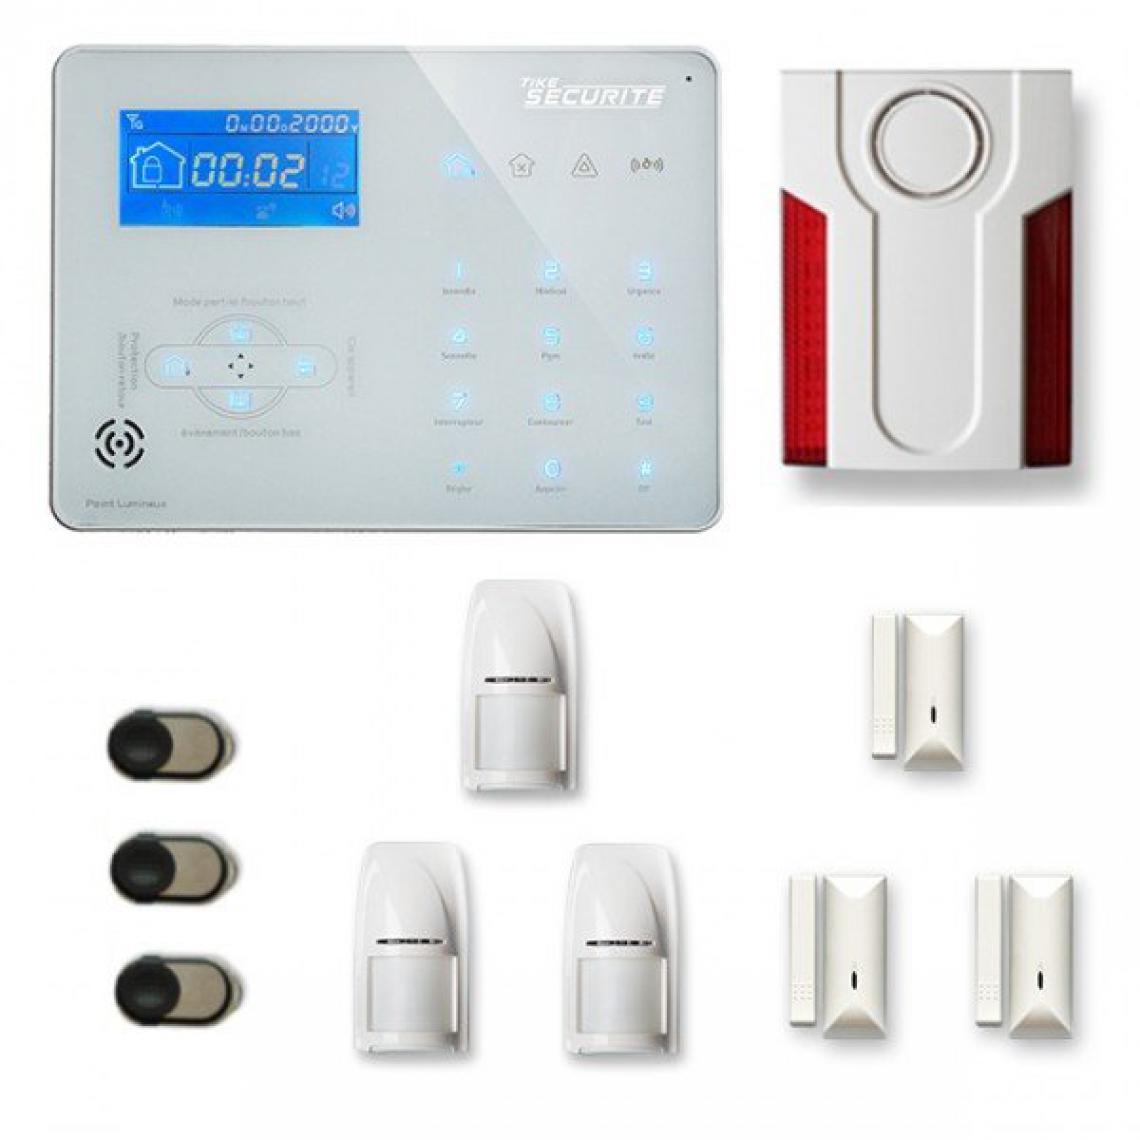 Tike Securite - Alarme maison sans fil ICE-B28 Compatible Box internet et GSM - Alarme connectée